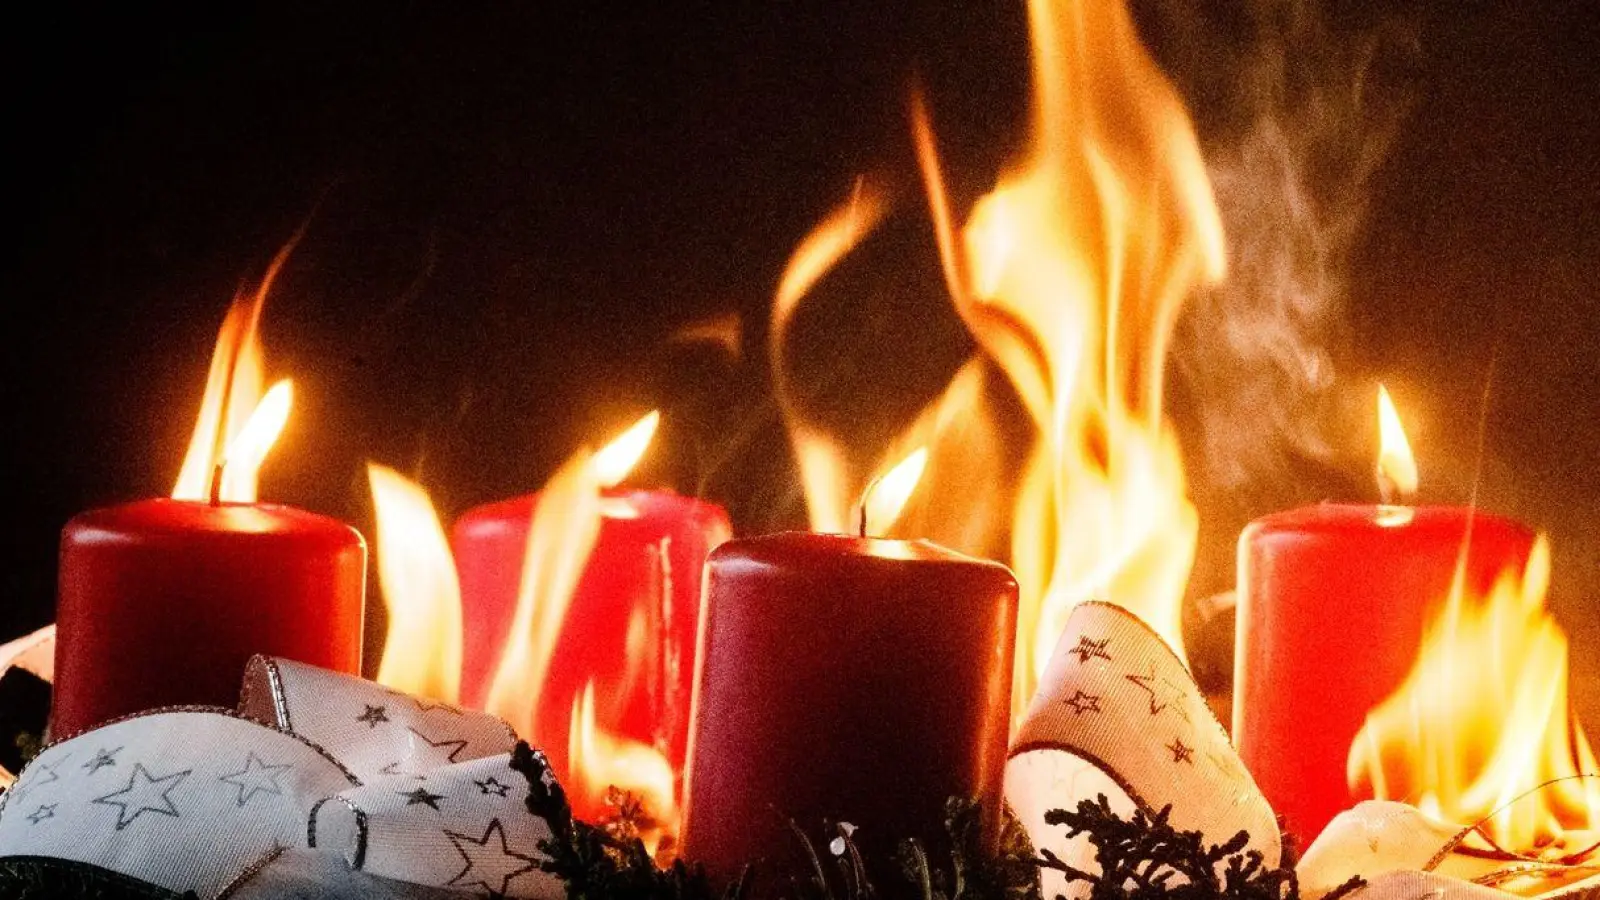 In der Advent- und Weihnachtszeit kann durch brennende Kerzen auch schnell mal ein Feuer entstehen. (Foto: Markus Scholz/dpa-tmn)